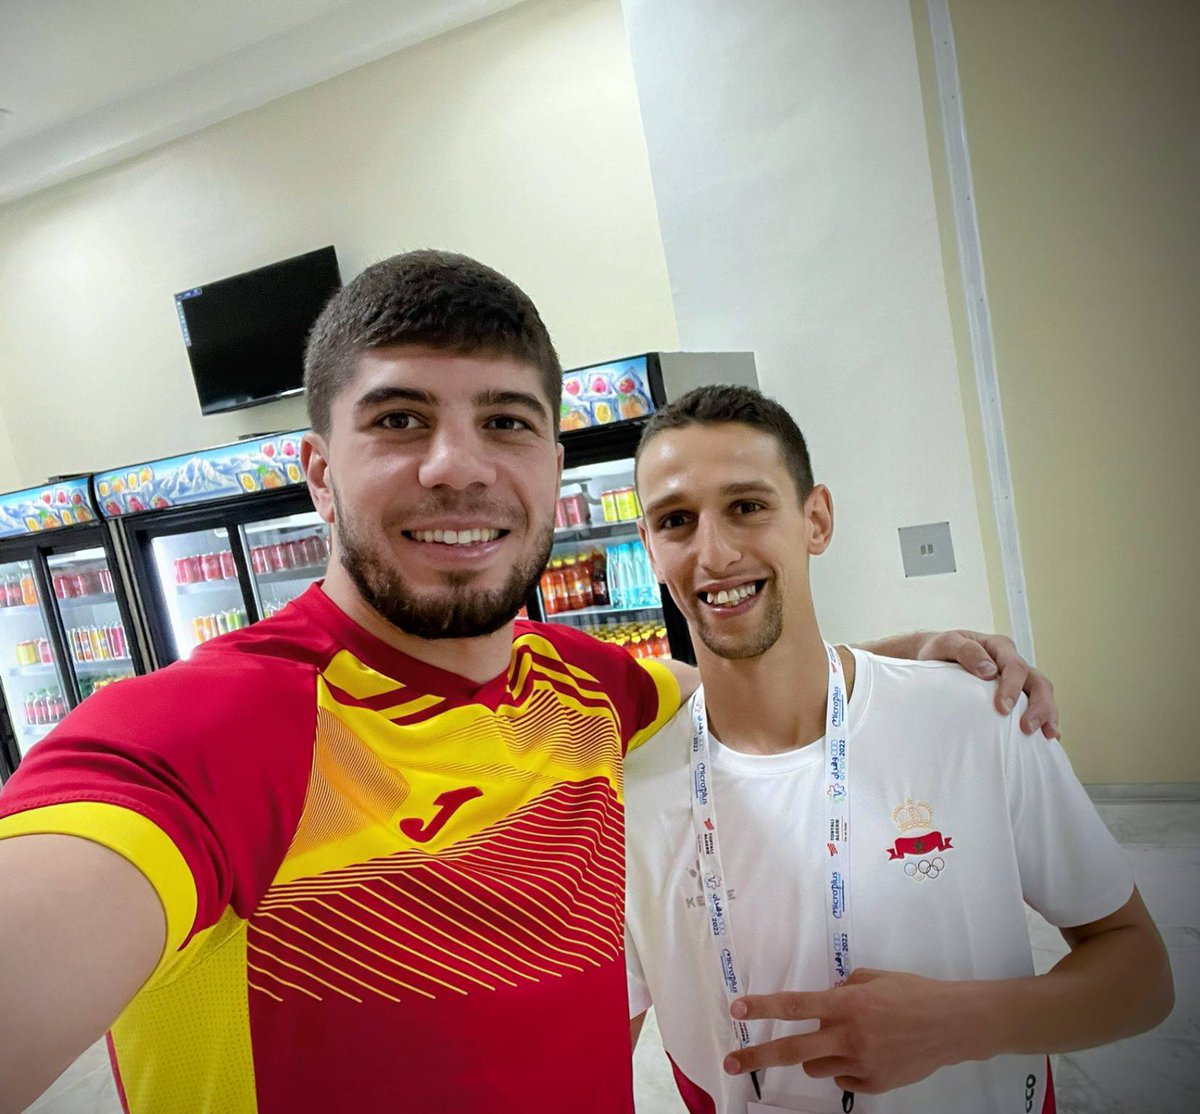 📍#JuegosDelMediterráneo 2022.
🥊Dos grandes: #GaziKhalidov y #ZohuariTetef.
👌Un honor haber contado con ambos entre los cracks que formaron el equipo #Euskobox GREEN de la Liga4boxing.
👍 Mucha suerte!!!